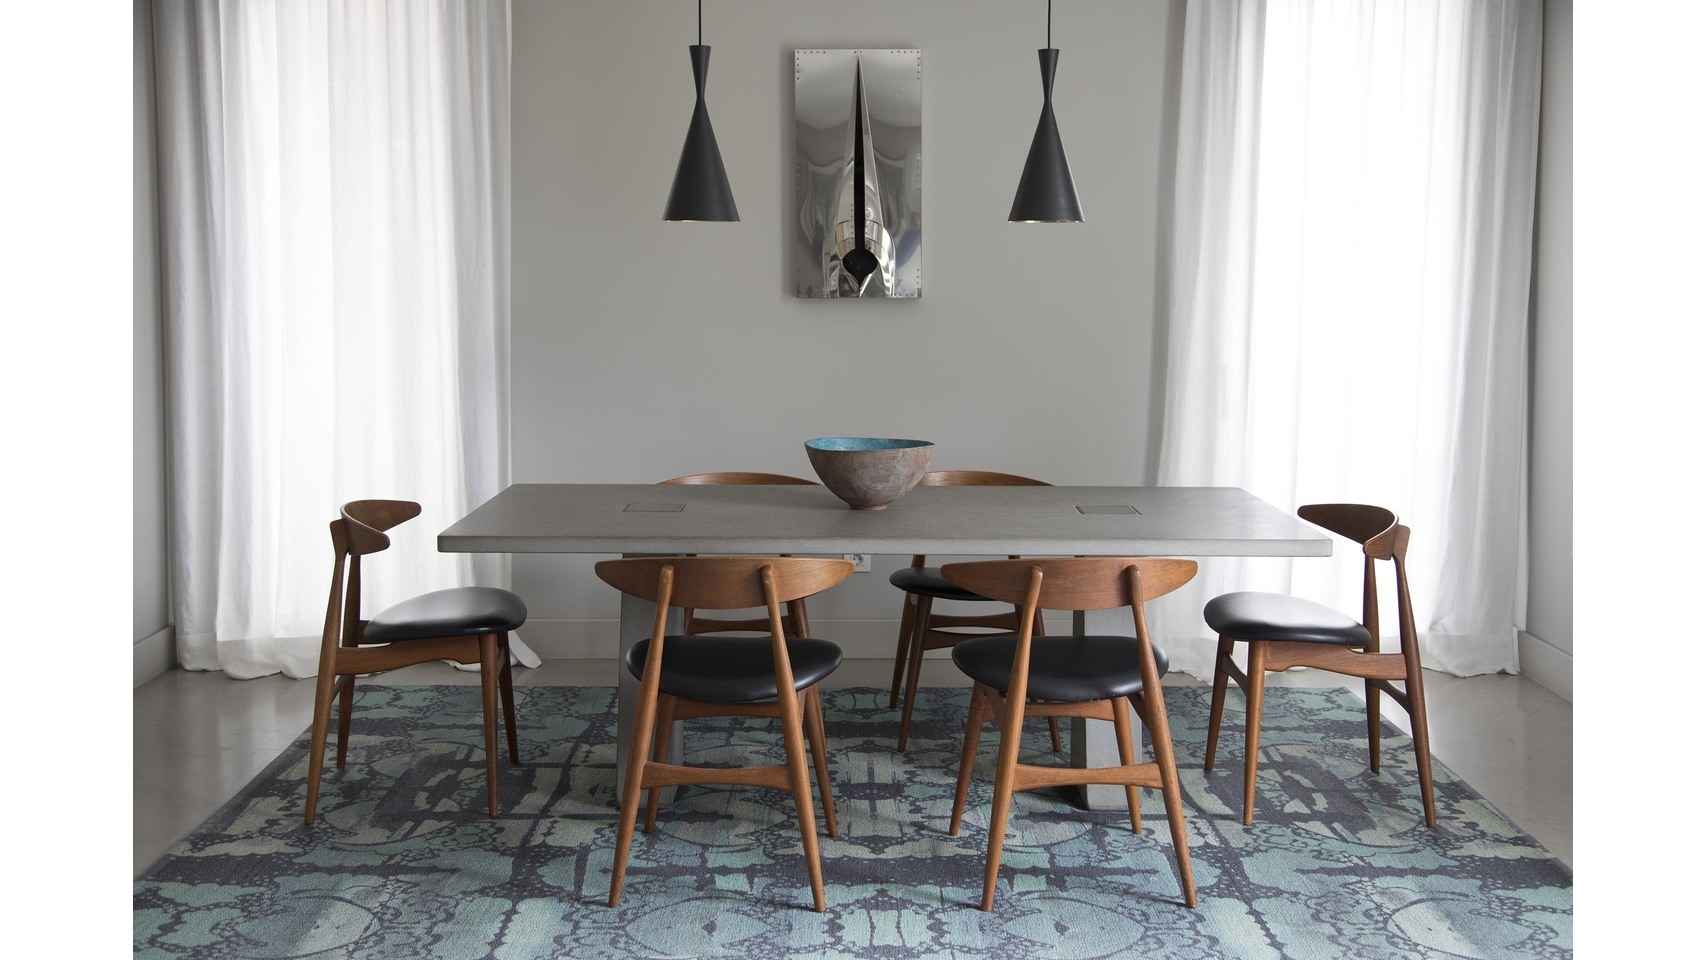 En el comedor, mesa del arquitecto Angelo Mangiarotti, sillas de Hans Wegner, alfombra de Kasthall, lámparas de Tom Dixon y cerámica de Silvia Valentín.